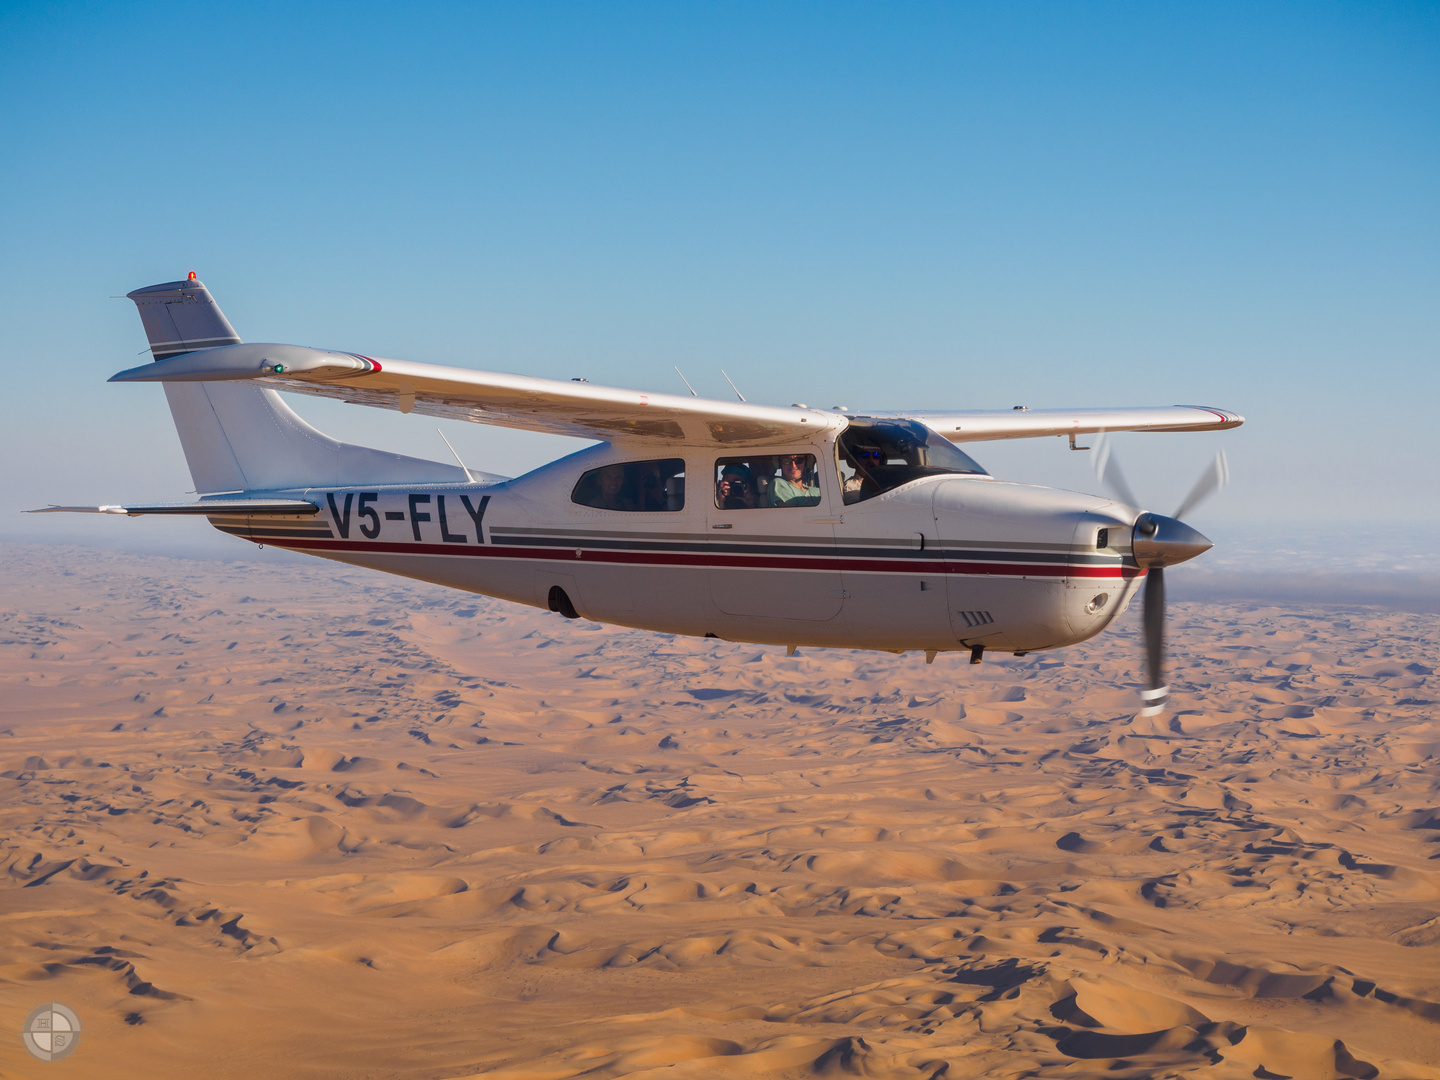 Rundflug über der Namib-Wüste